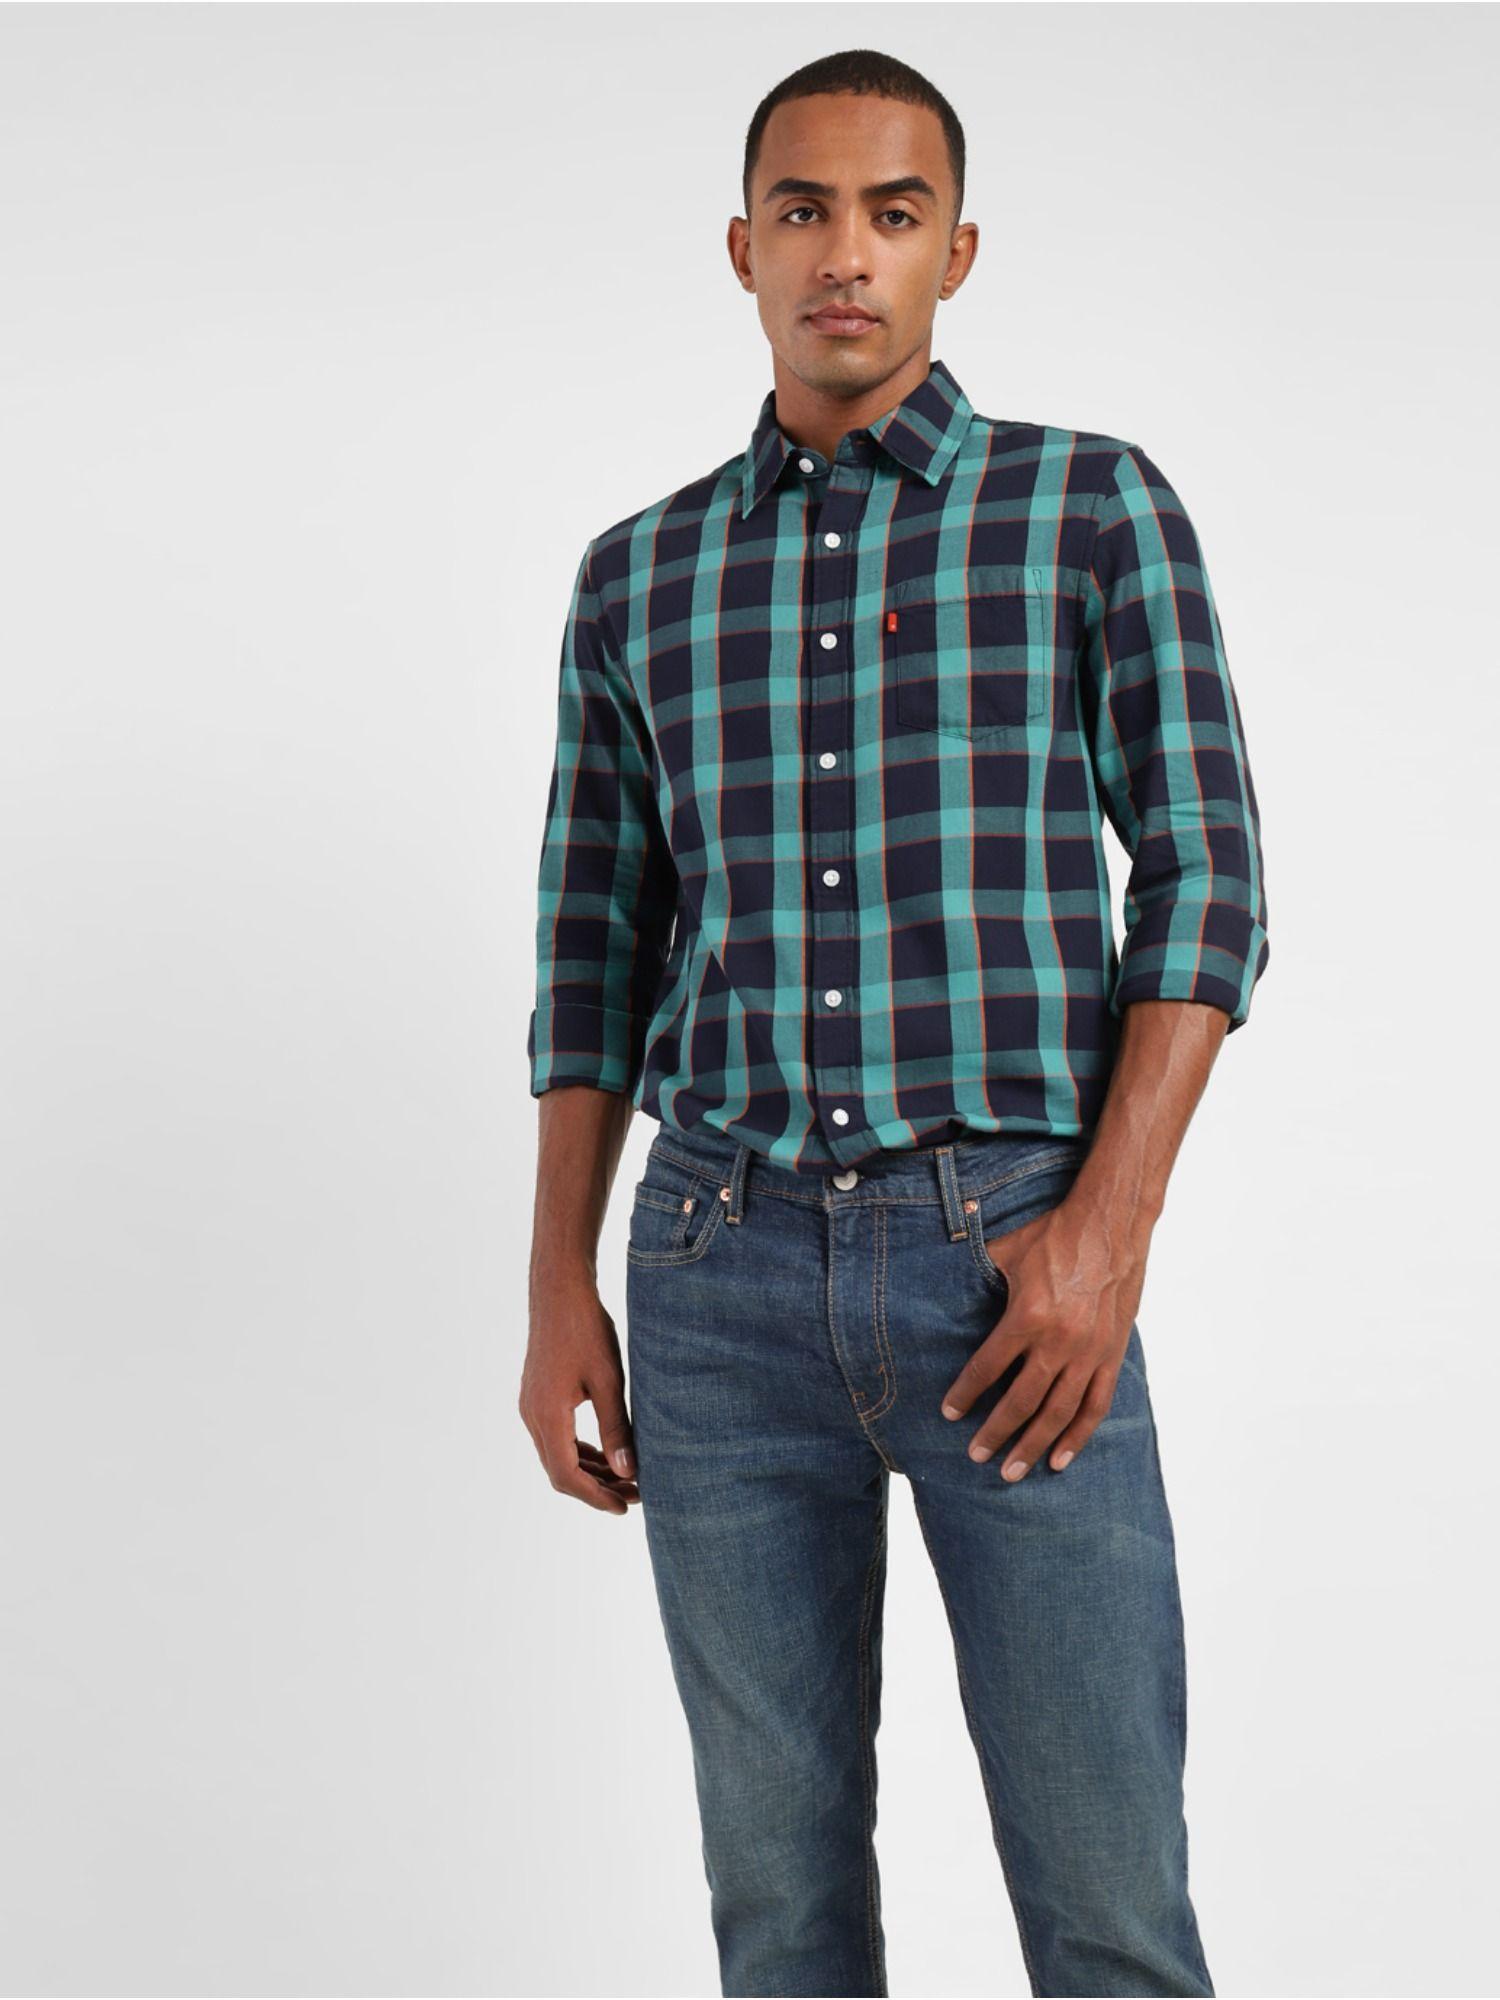 men's navy blue checkered spread collar shirt